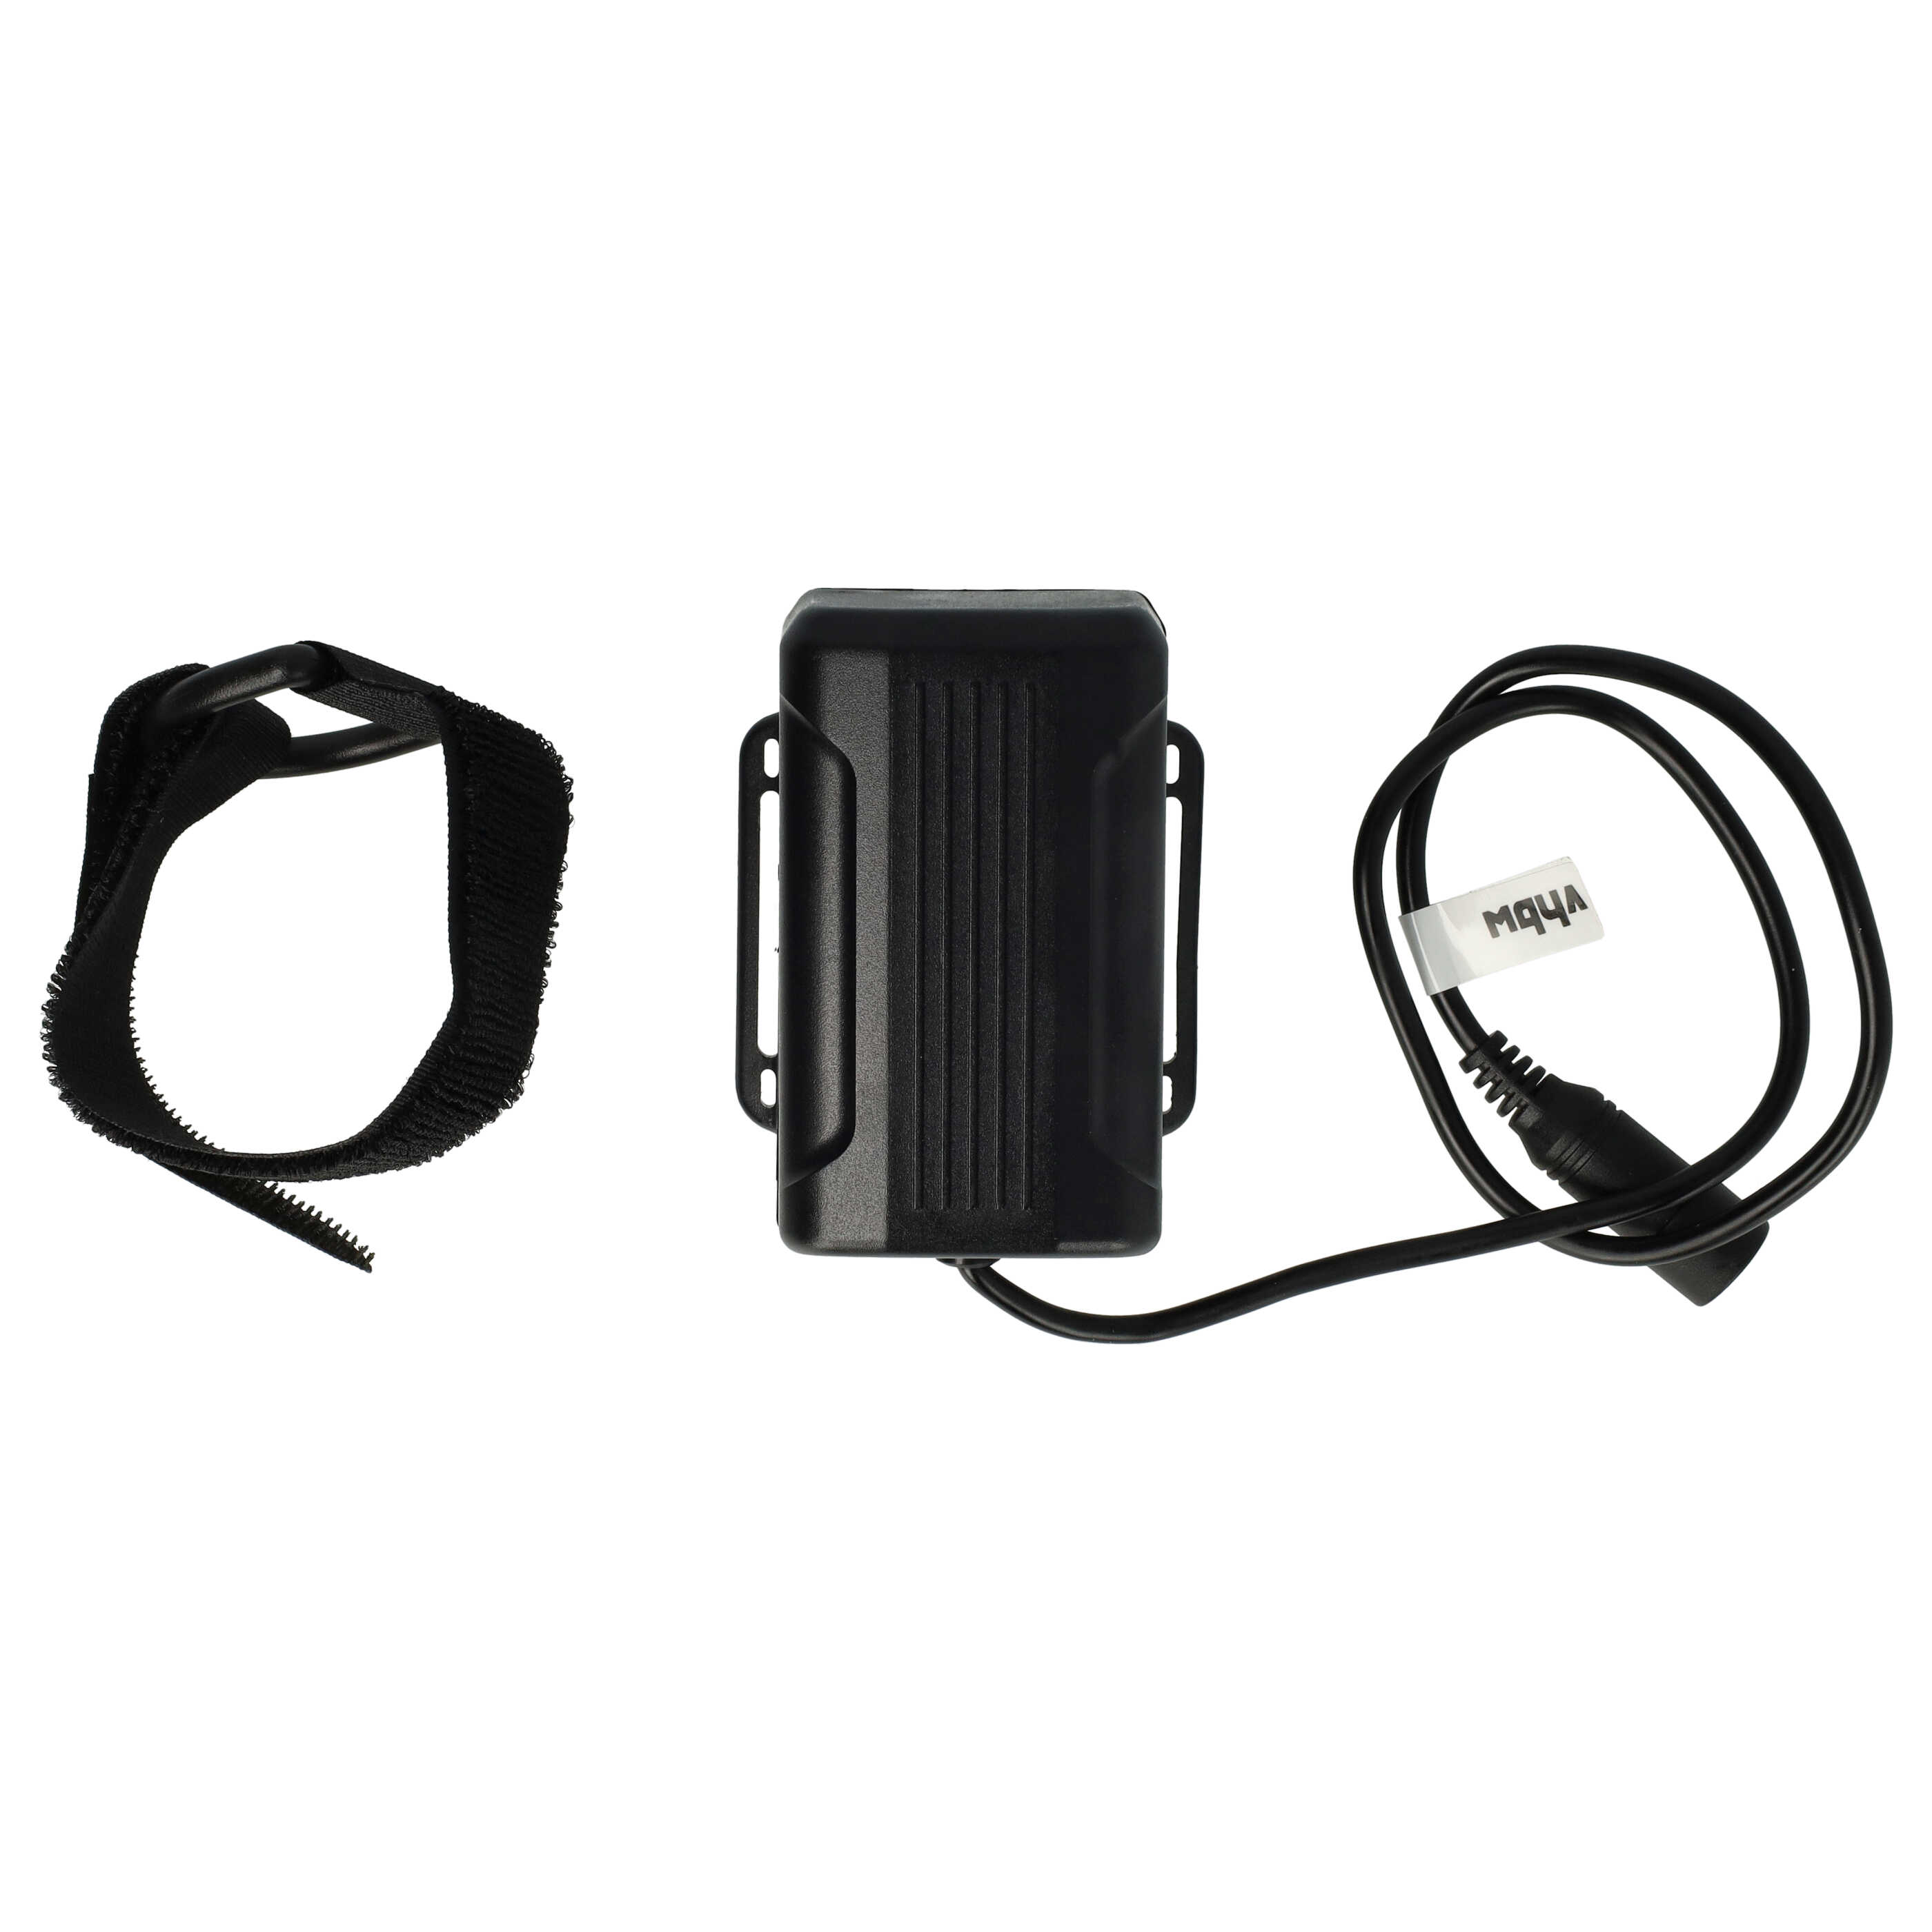 Pacco batteria + caricatore per faretto per biciclette - 6000mAh 8,4V Li-Ion, impermeabile